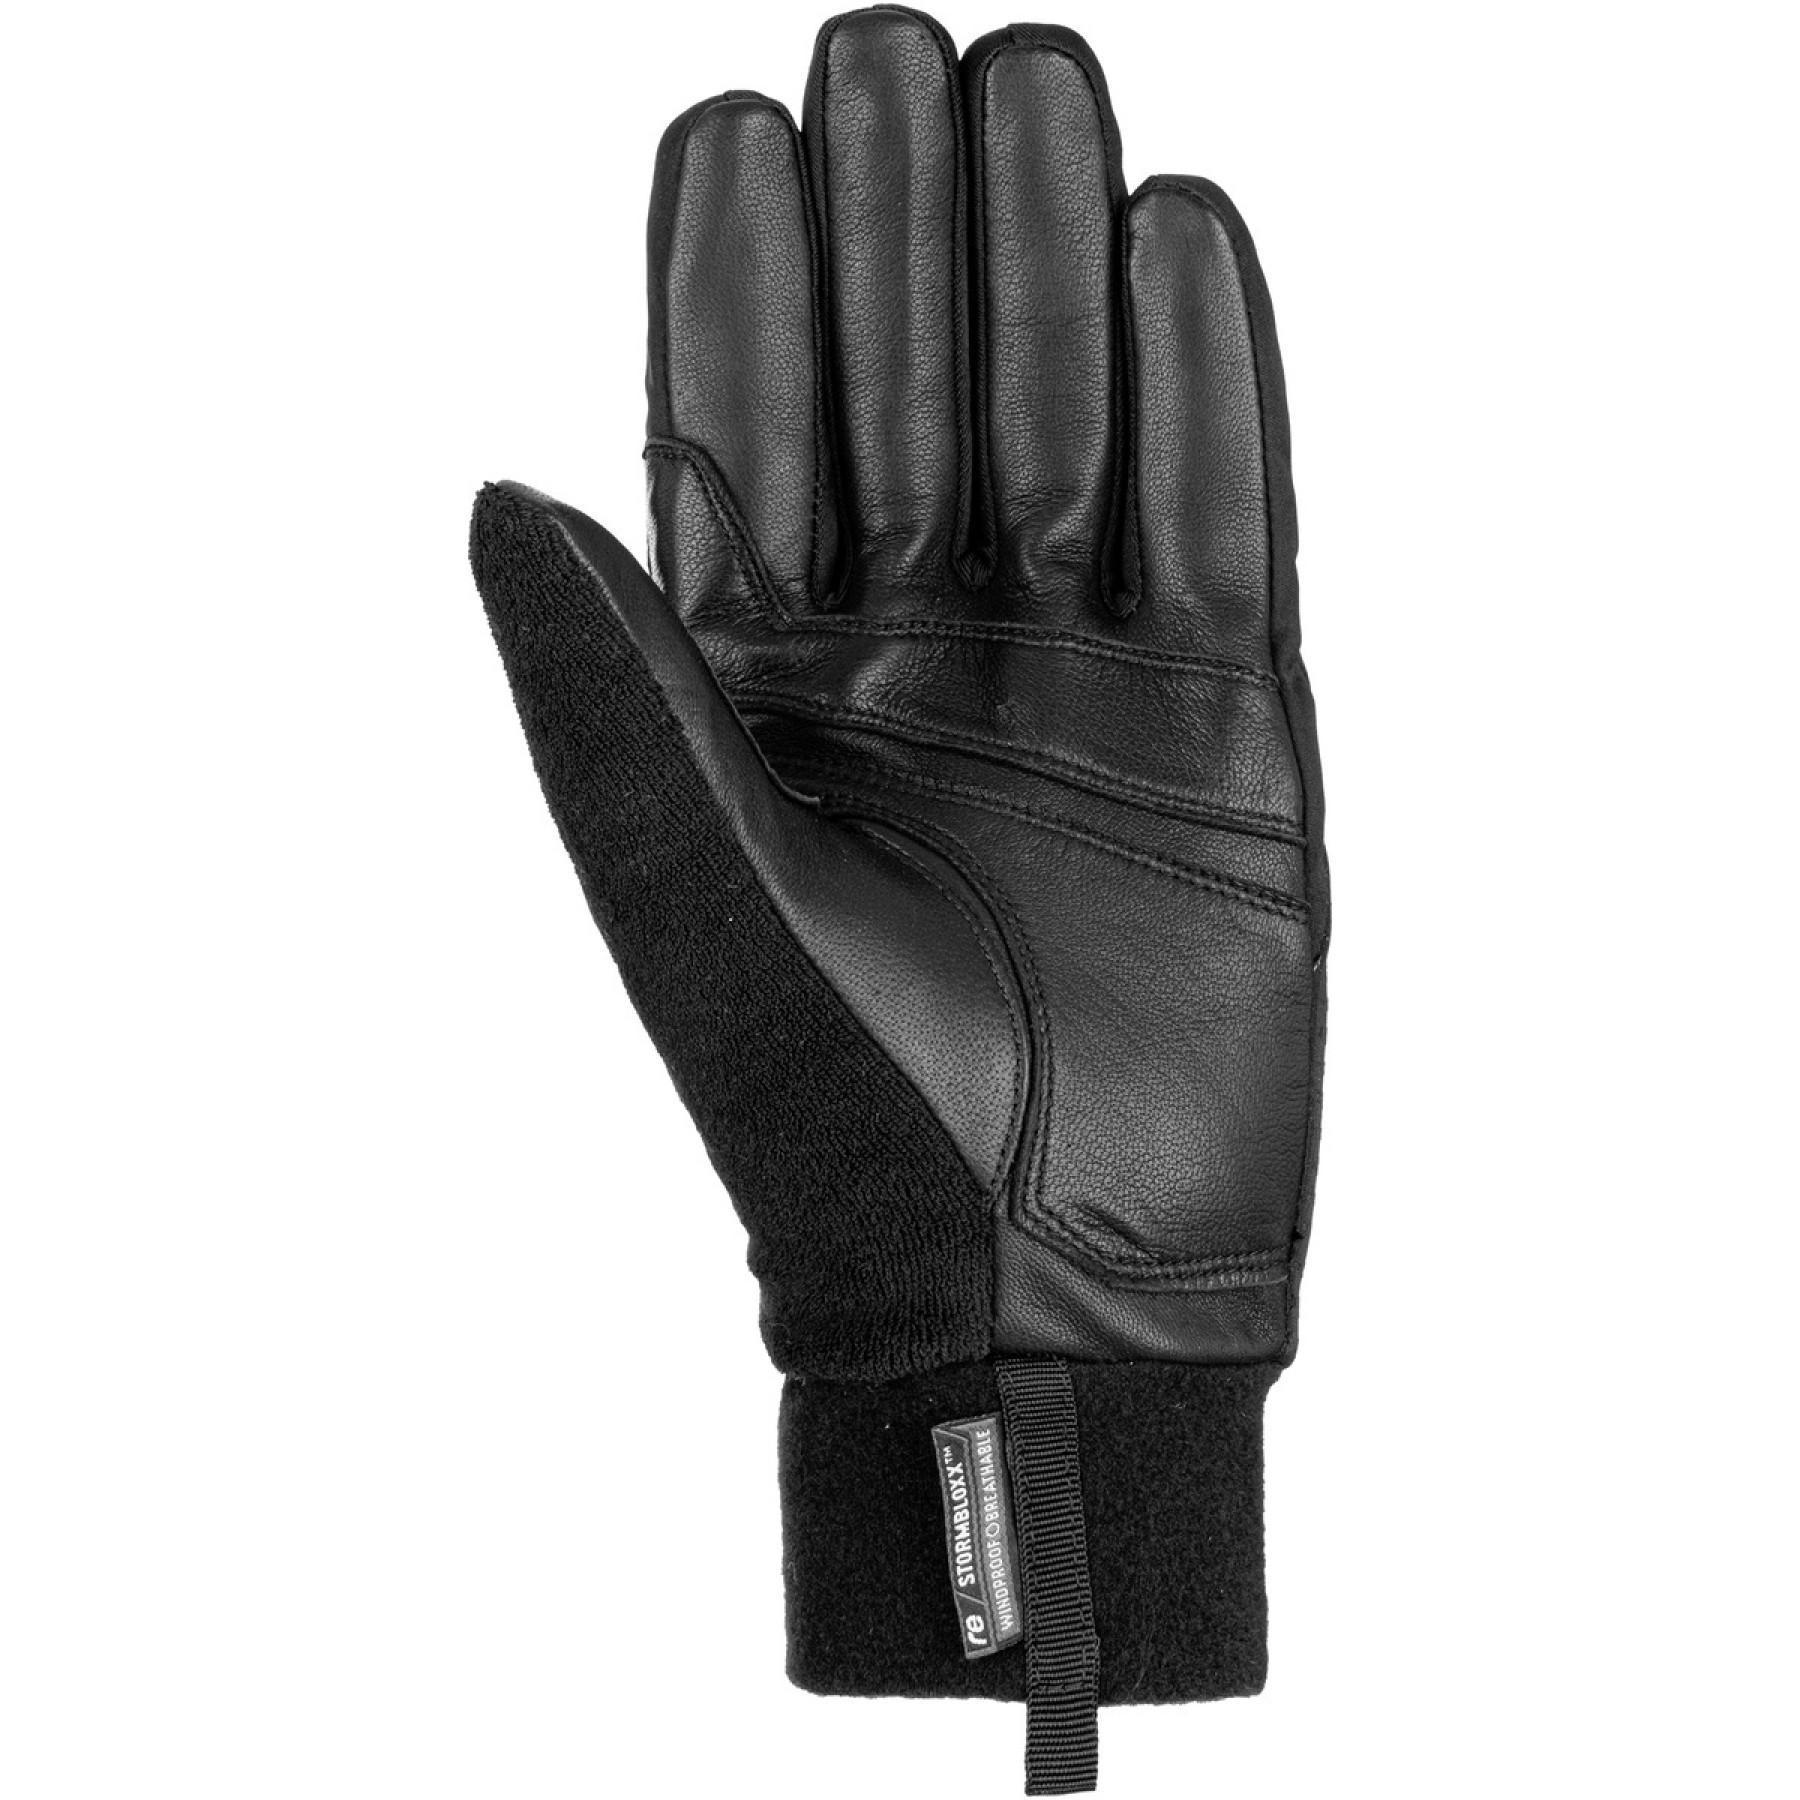 Gloves Reusch Roald Stormbloxx